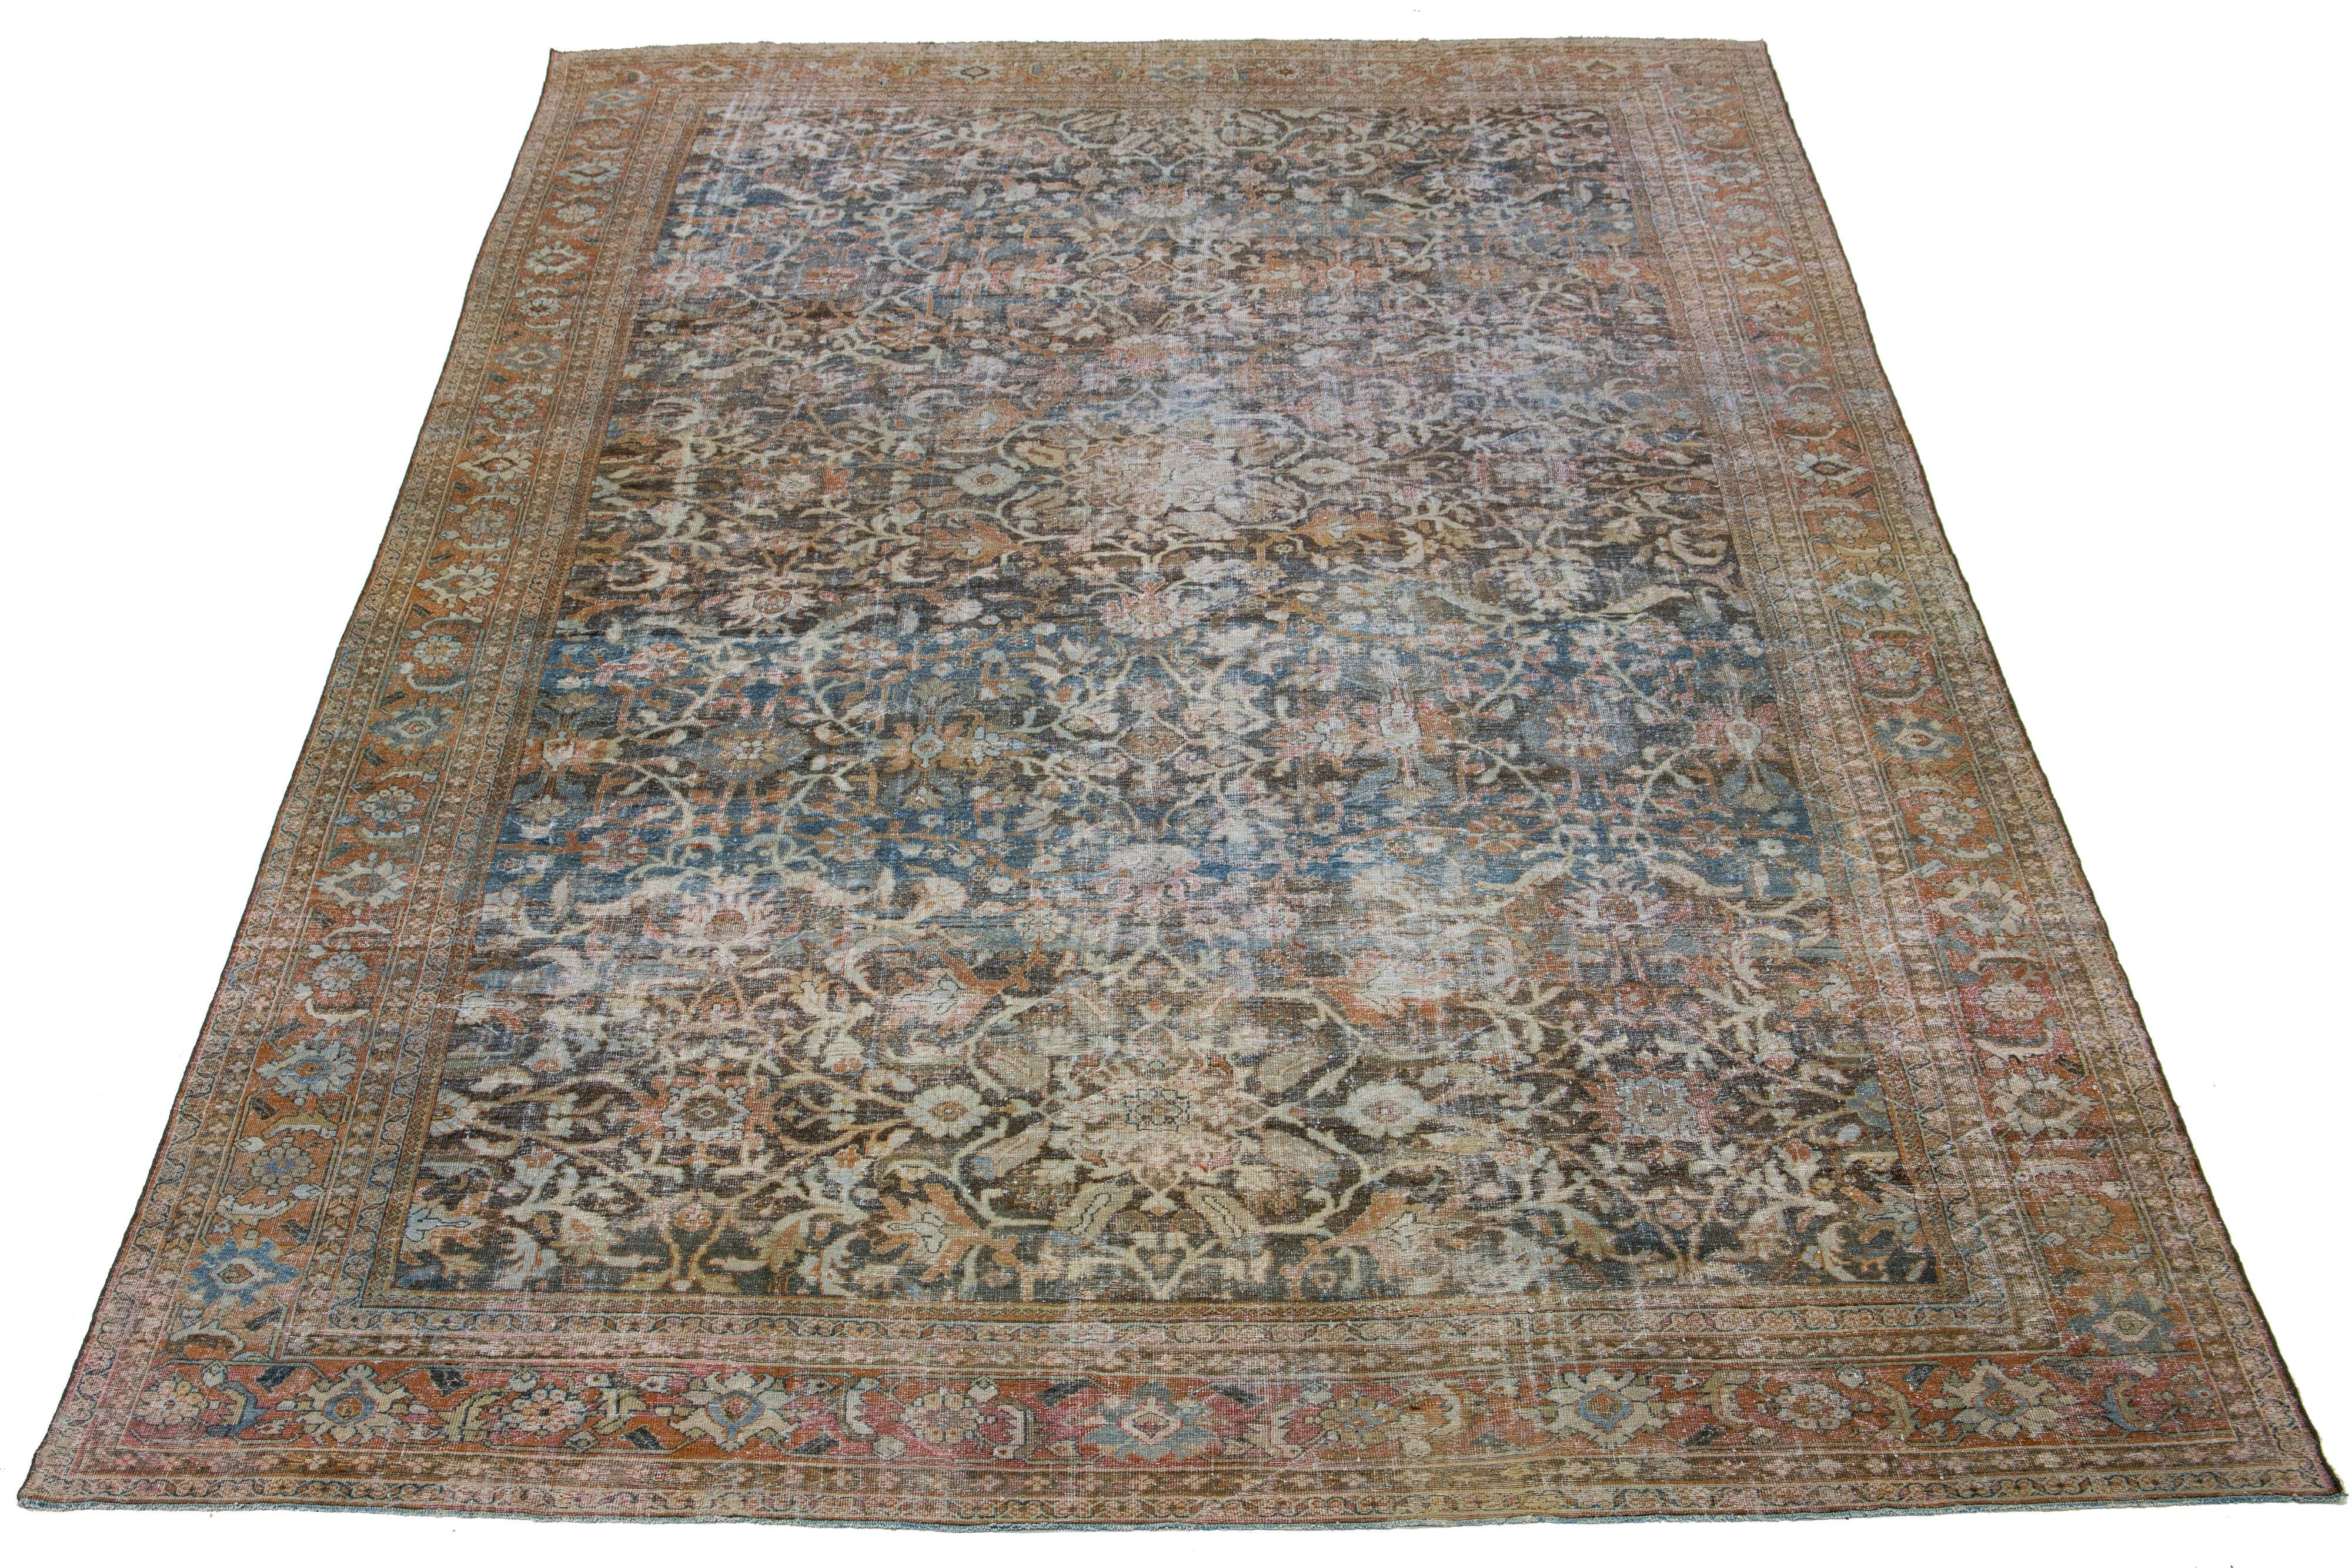 Schöner antiker persischer Mahal-Teppich aus handgeknüpfter Wolle mit beigem Feld. Dieses Stück hat einen orangefarbenen Rahmen mit grauen Akzenten in einem wunderschönen floralen Allover-Muster.

Dieser Teppich misst 13'2